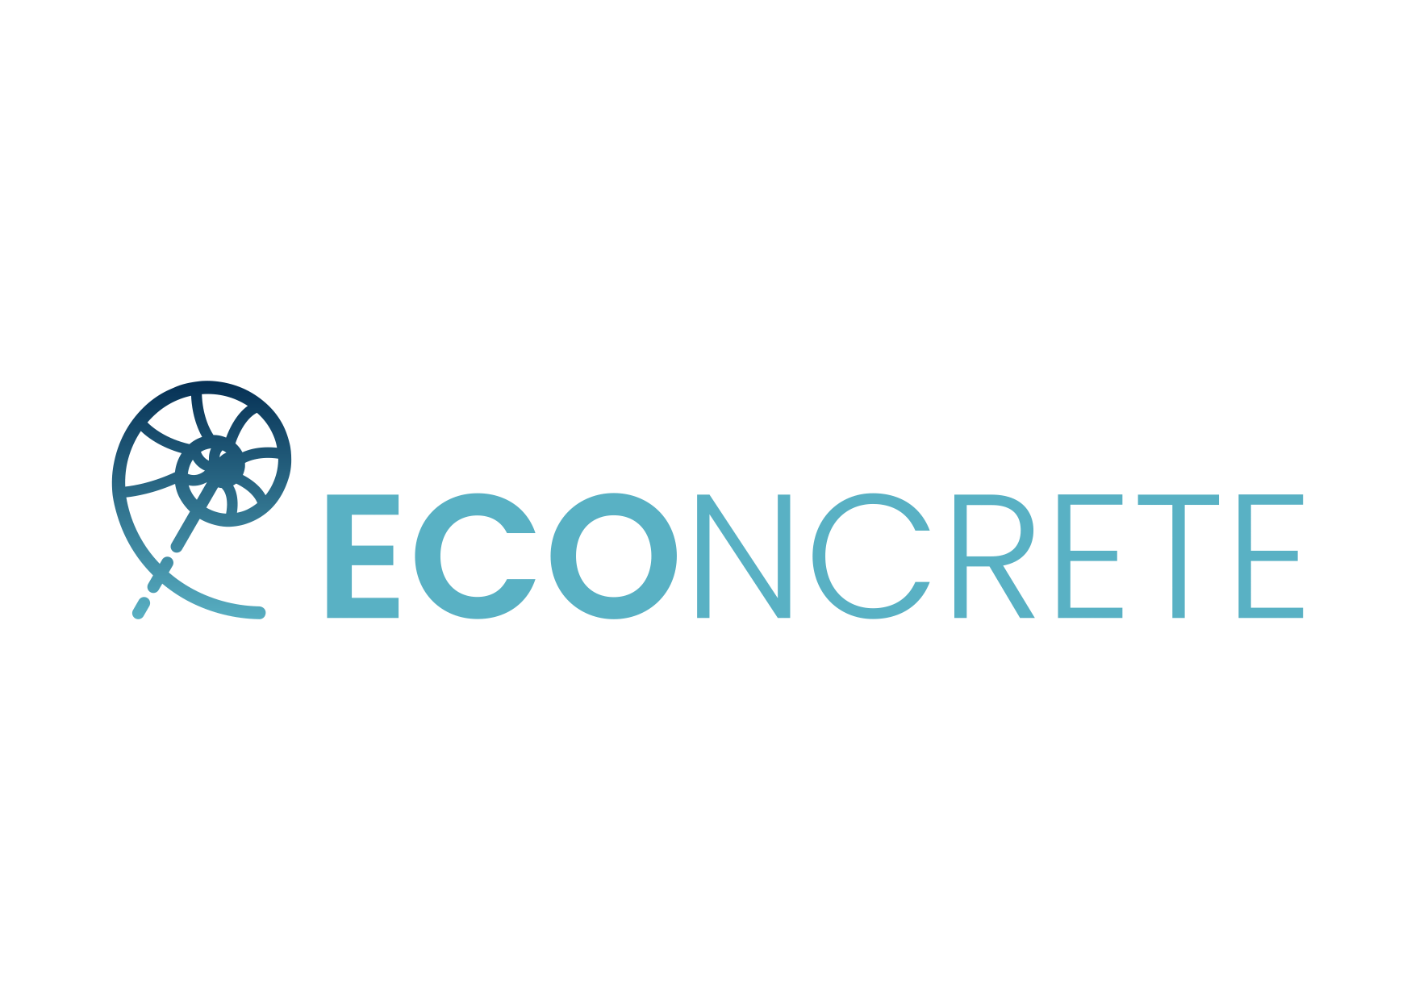 ECOncrete Inc.